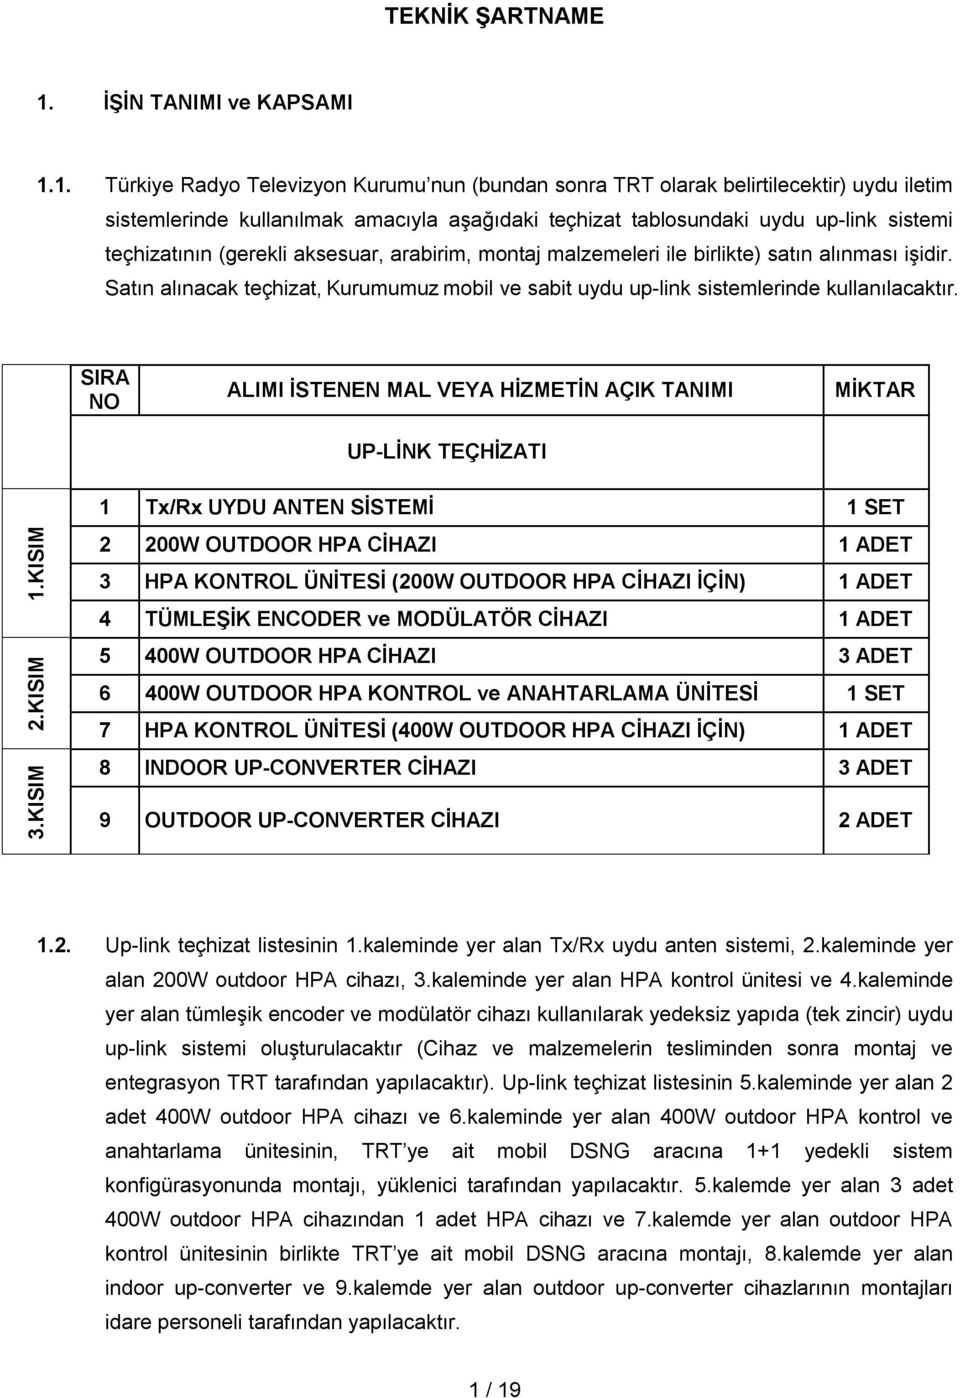 1. Türkiye Radyo Televizyon Kurumu nun (bundan sonra TRT olarak belirtilecektir) uydu iletim sistemlerinde kullanılmak amacıyla aşağıdaki teçhizat tablosundaki uydu up-link sistemi teçhizatının